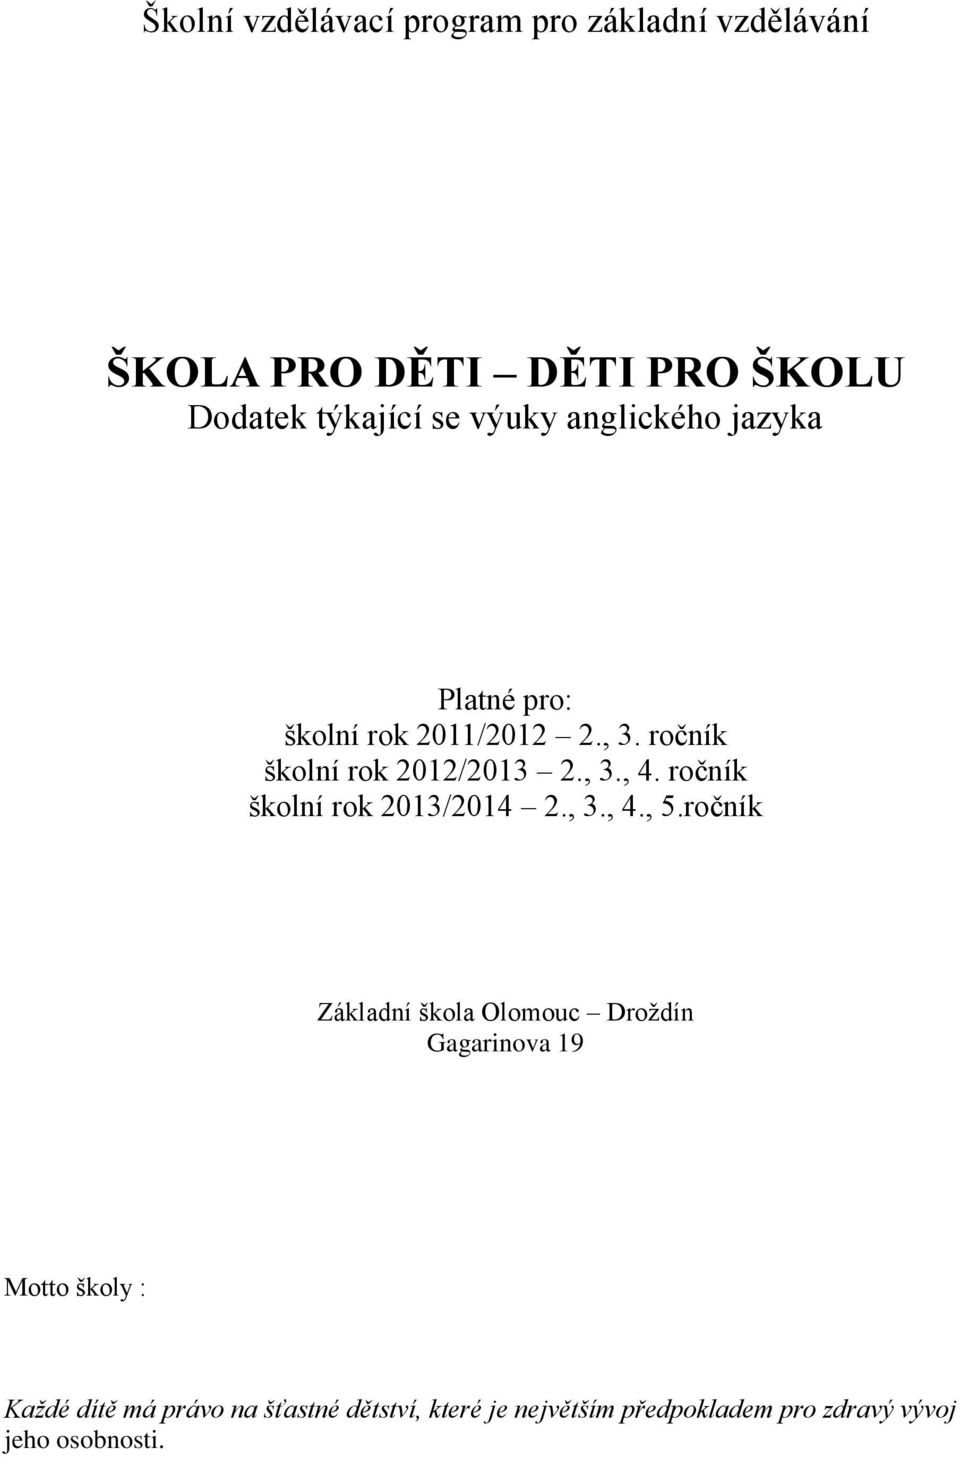 ročník školní rok 2013/2014 2., 3., 4., 5.